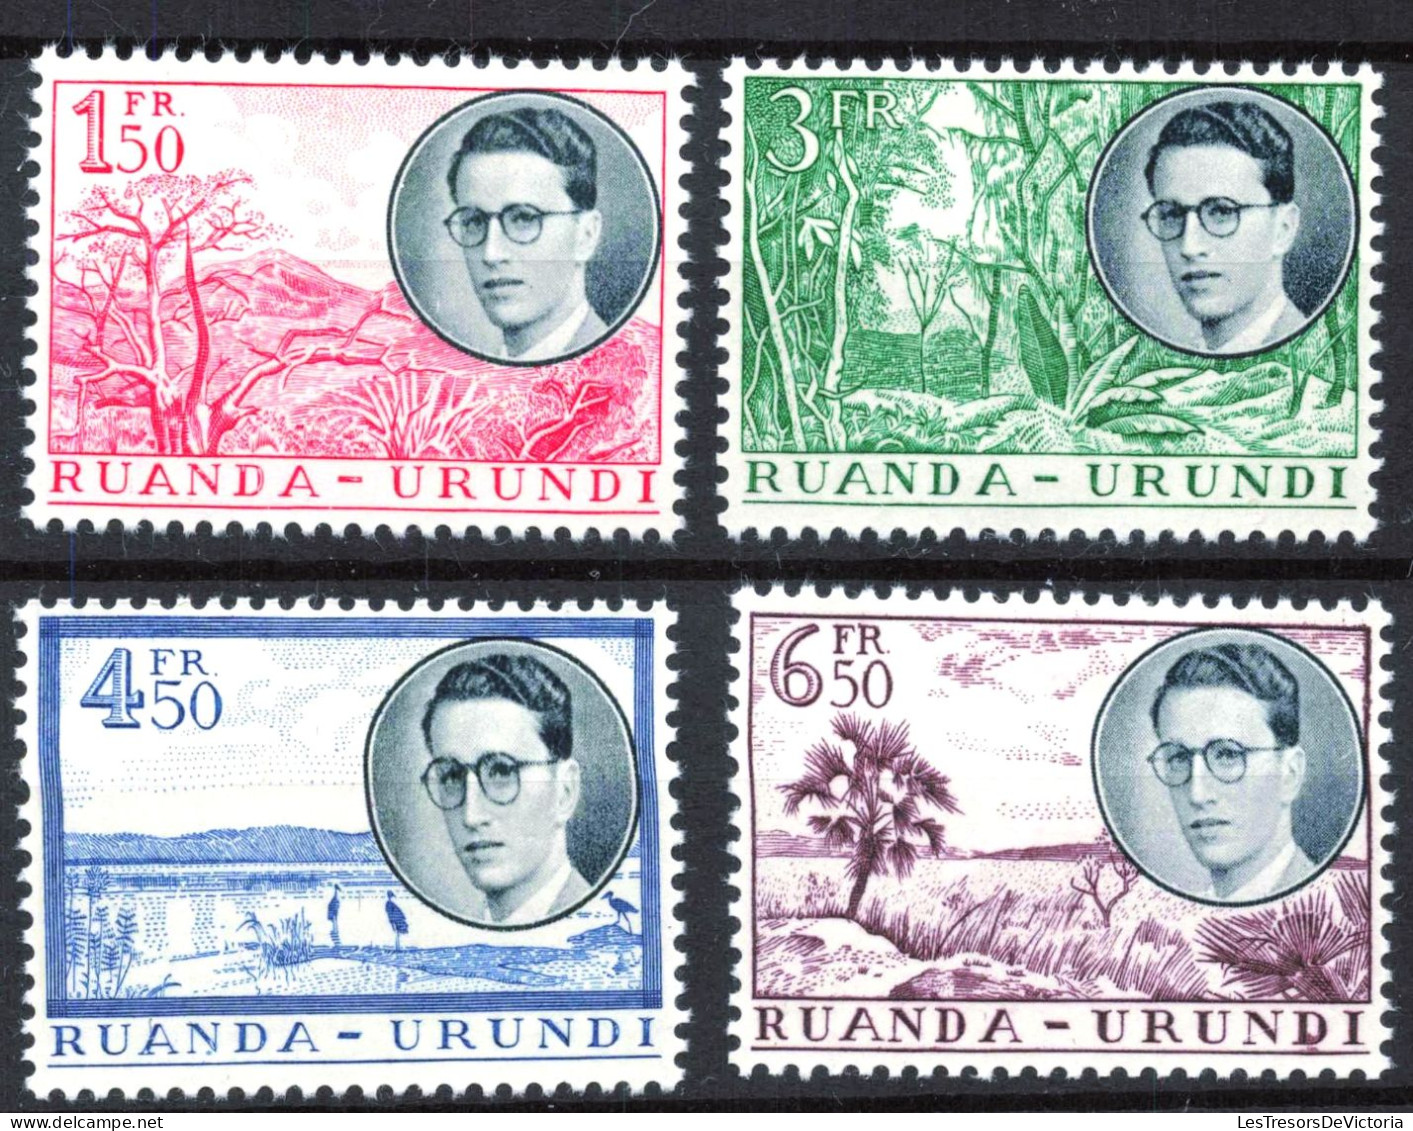 Timbre - Ruanda Urundi - COB 50/61* - 1924 - Timbre Congo Belge Surchargés Ruanda Urundi - Cote 45 - Neufs